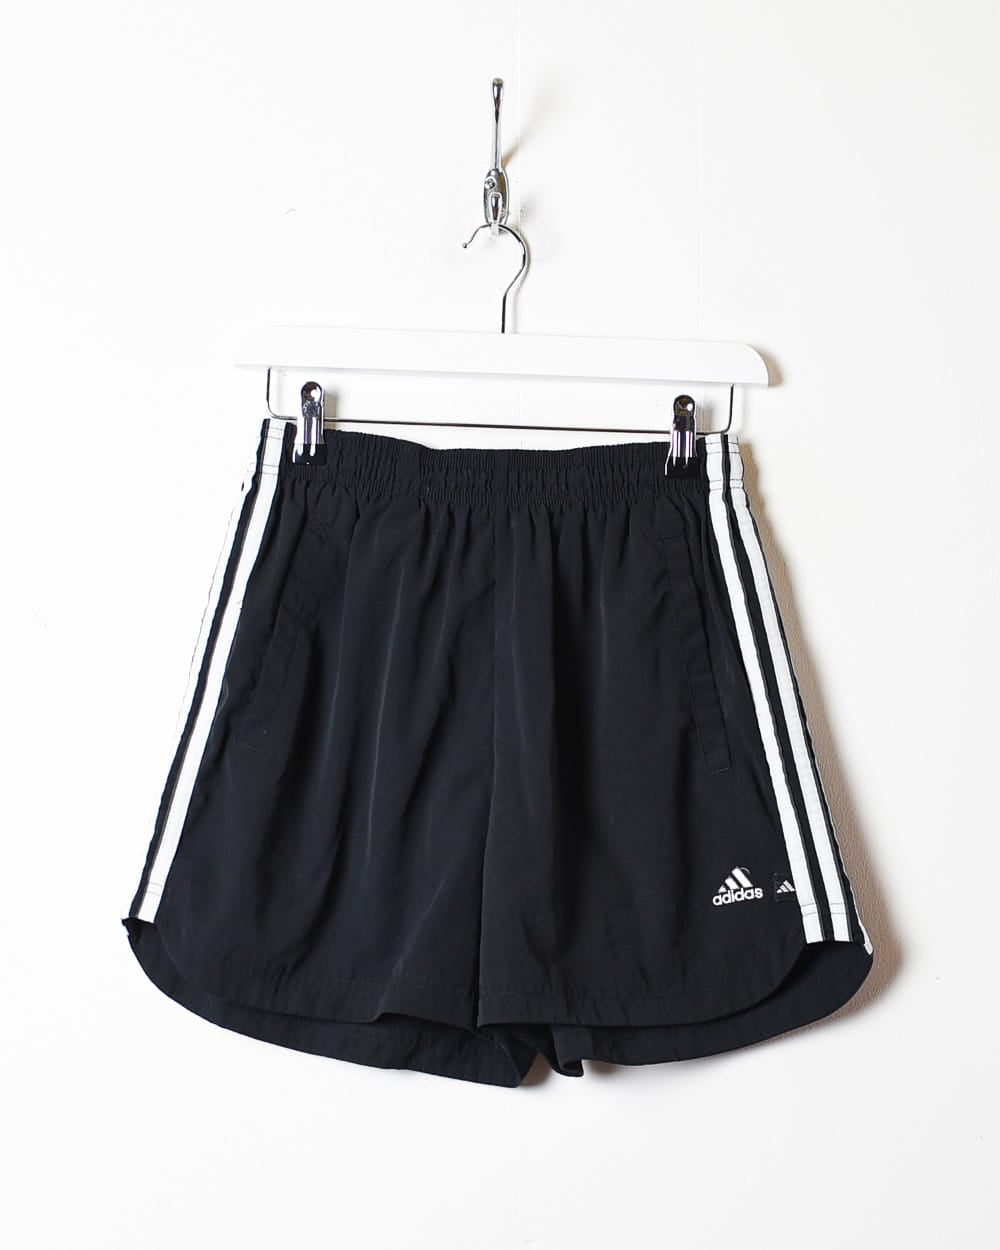 Black Adidas Shorts - Medium Women's